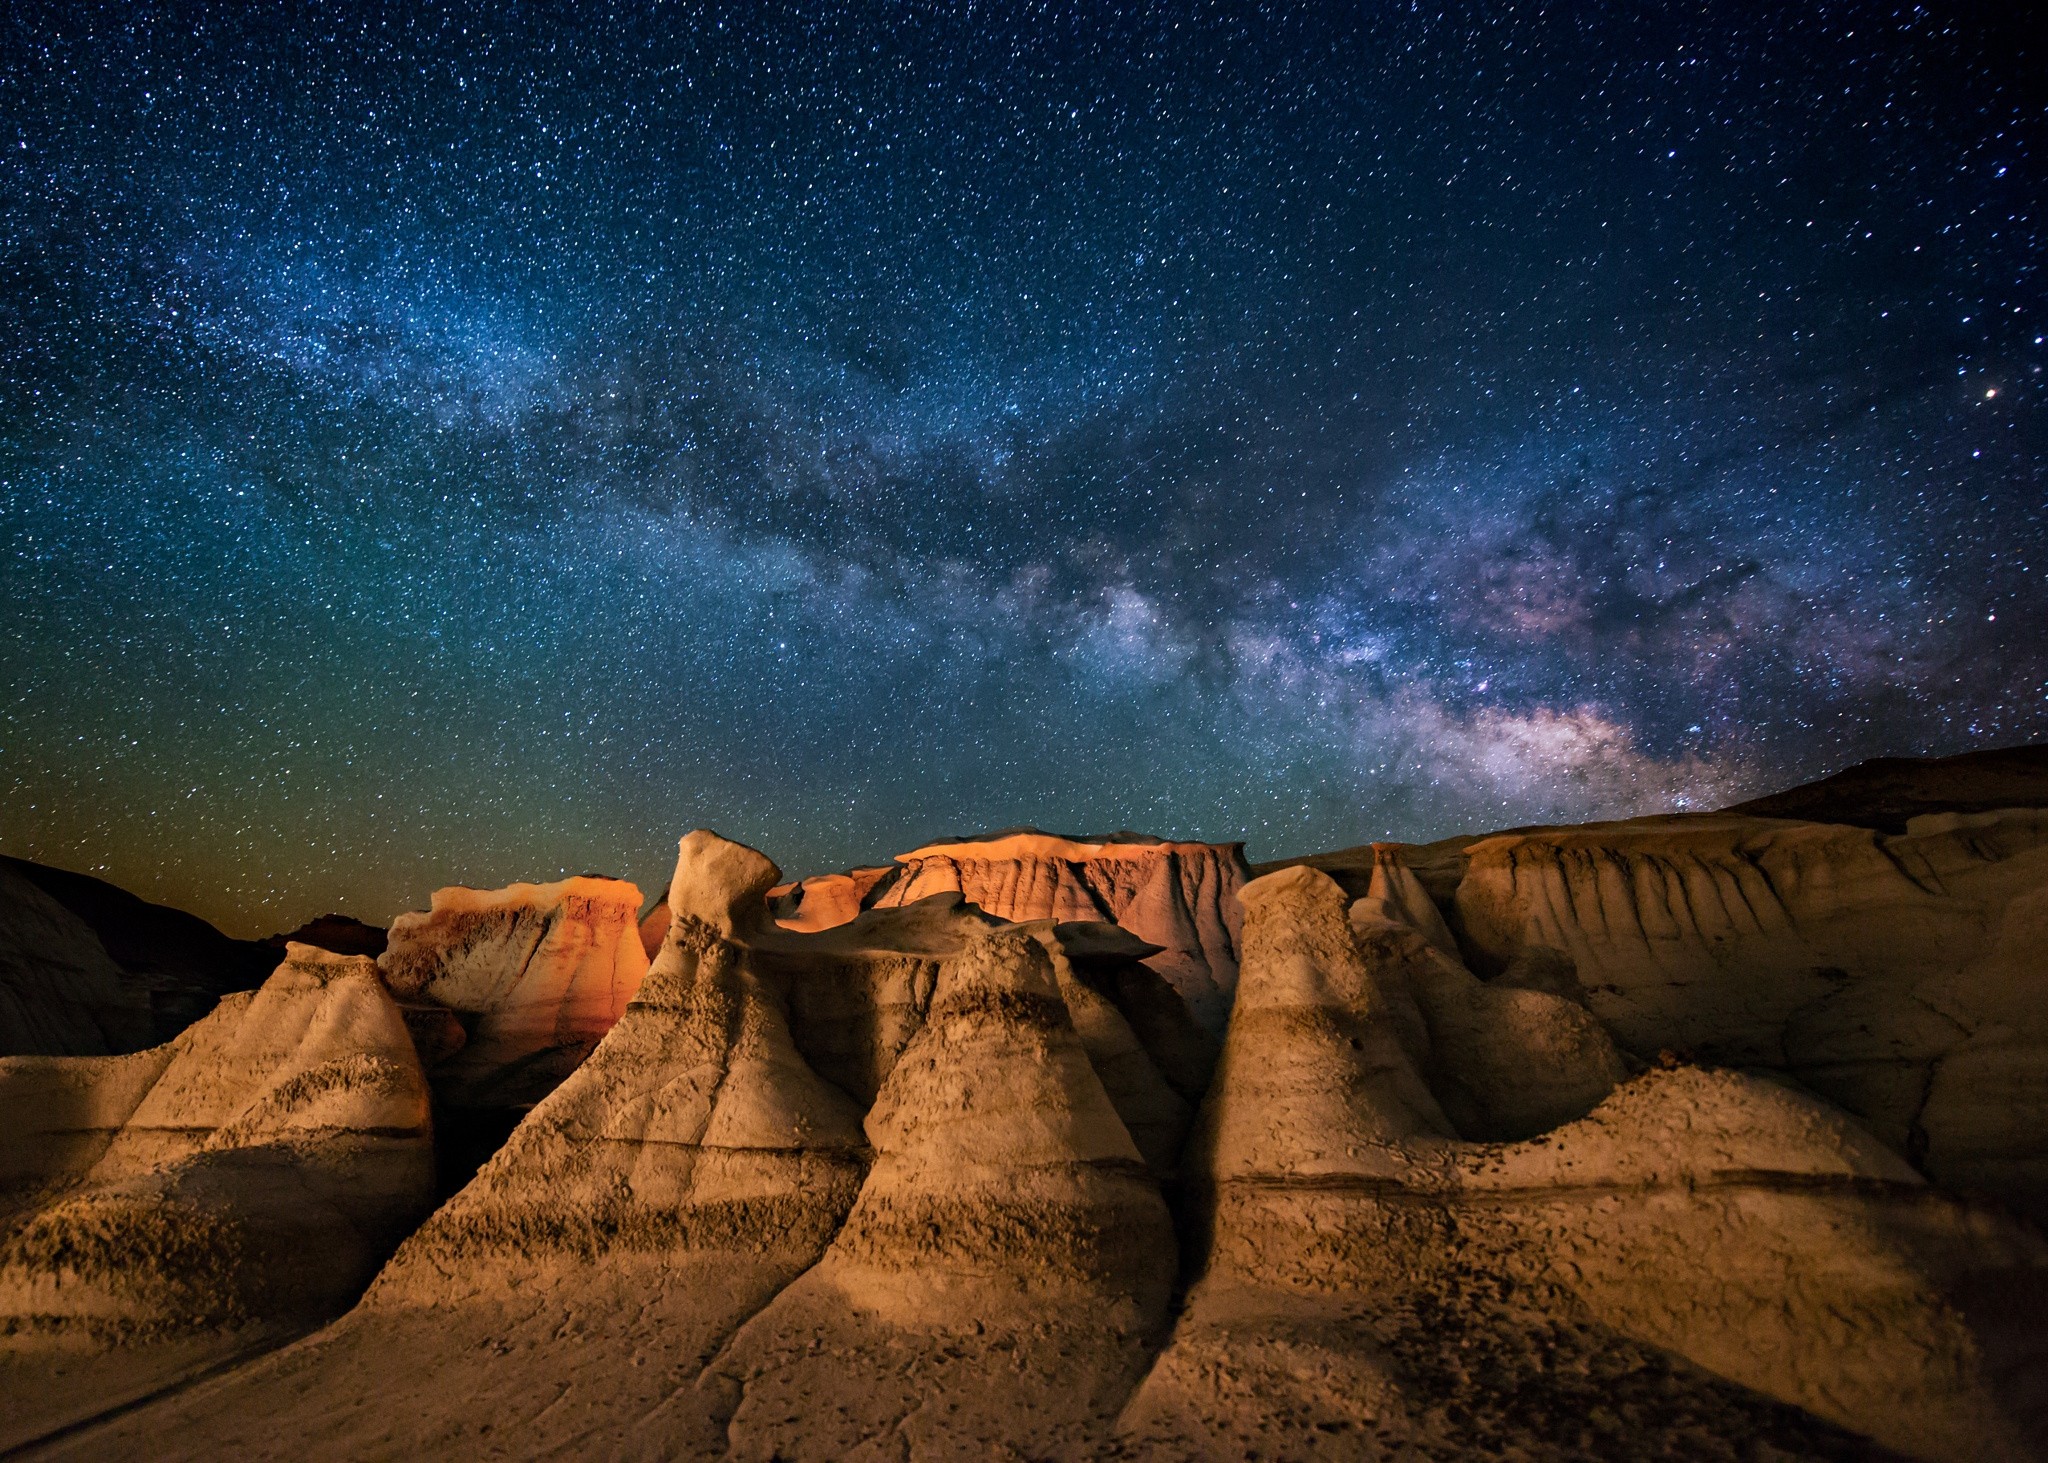 Фотографии размером 1024 2048 пикселей сохранили. Млечный путь Нью Мексико. Млечный путь в Нью Мехико. Штат Юта Марсианский ландшафт. Пустыня Нью Мексико.